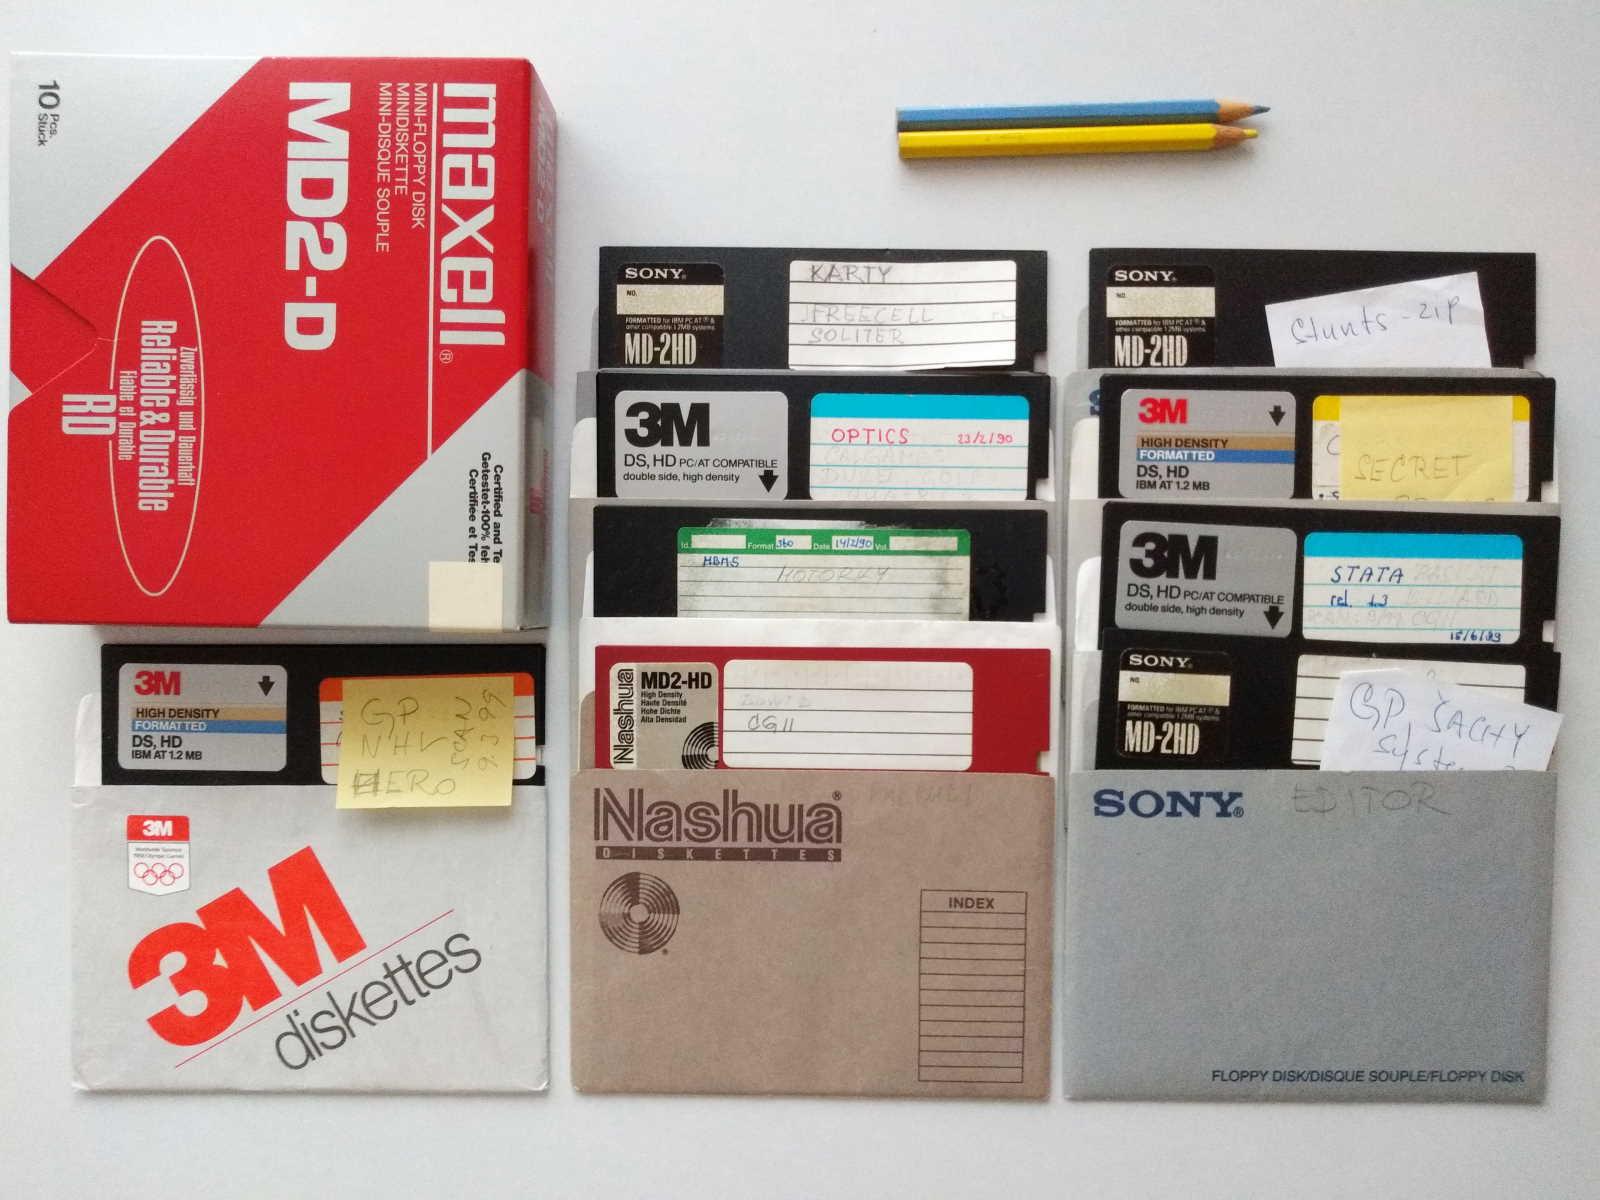 Diskety (C) pro ZX Spectrum, Didaktik, Commodore, PC a další N-bity - Počítače a hry